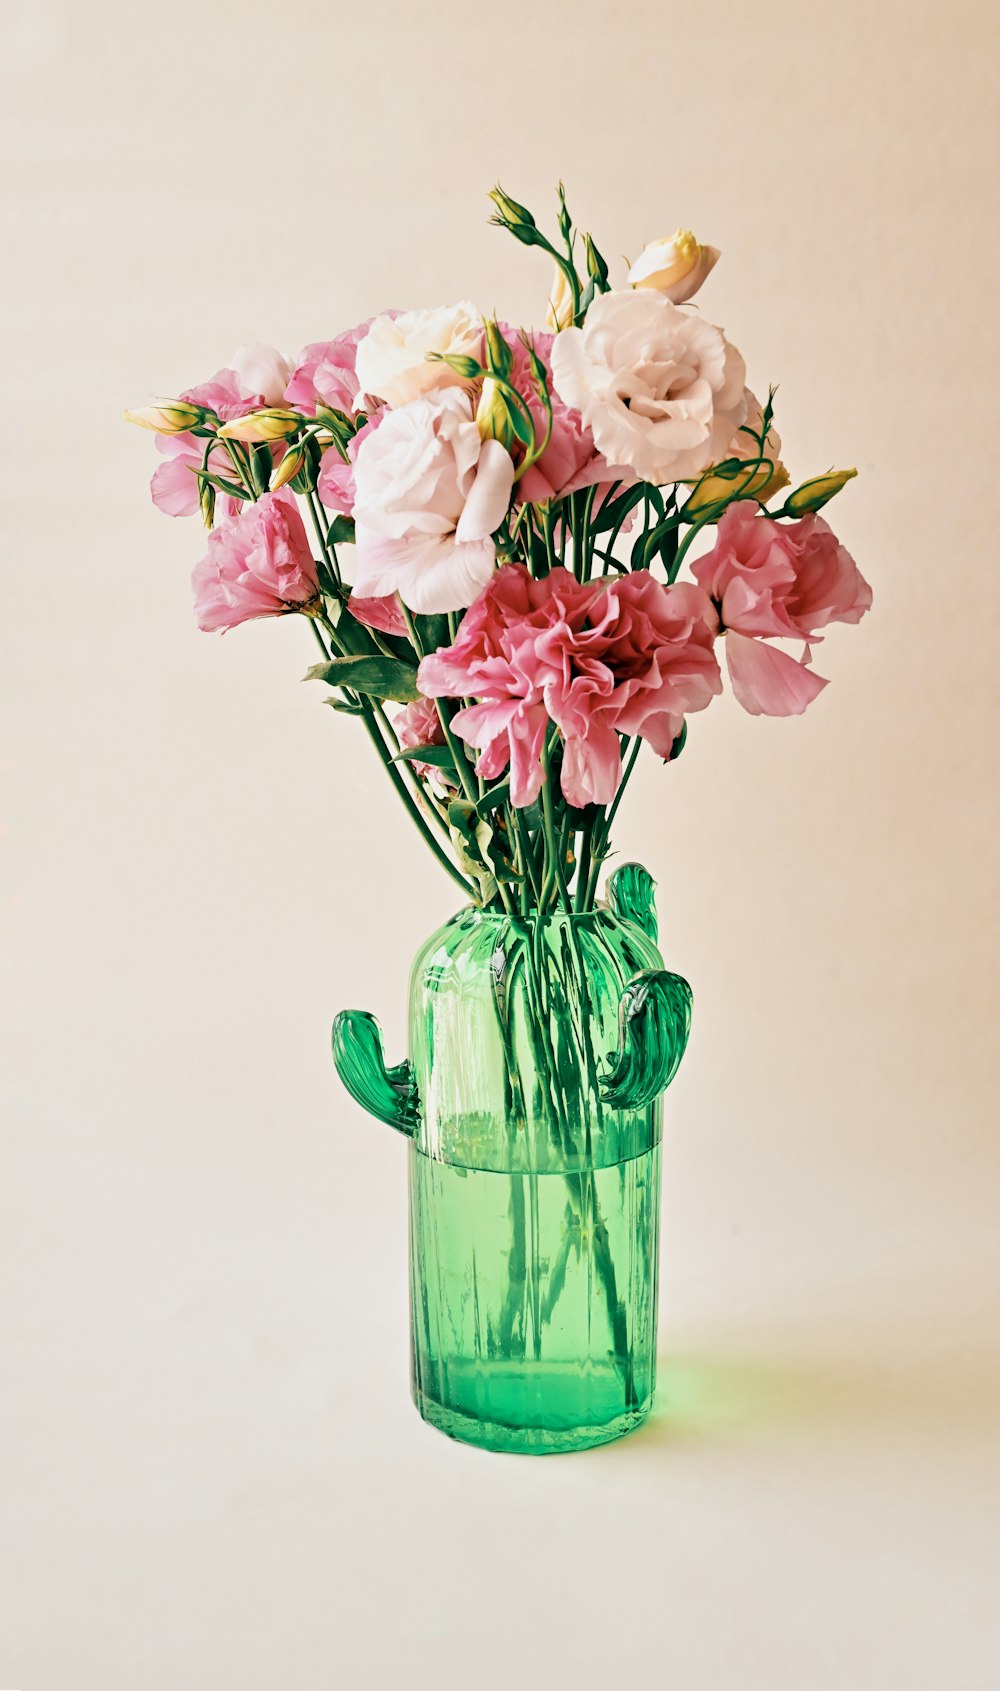 flores cor-de-rosa e brancas no vaso de vidro verde